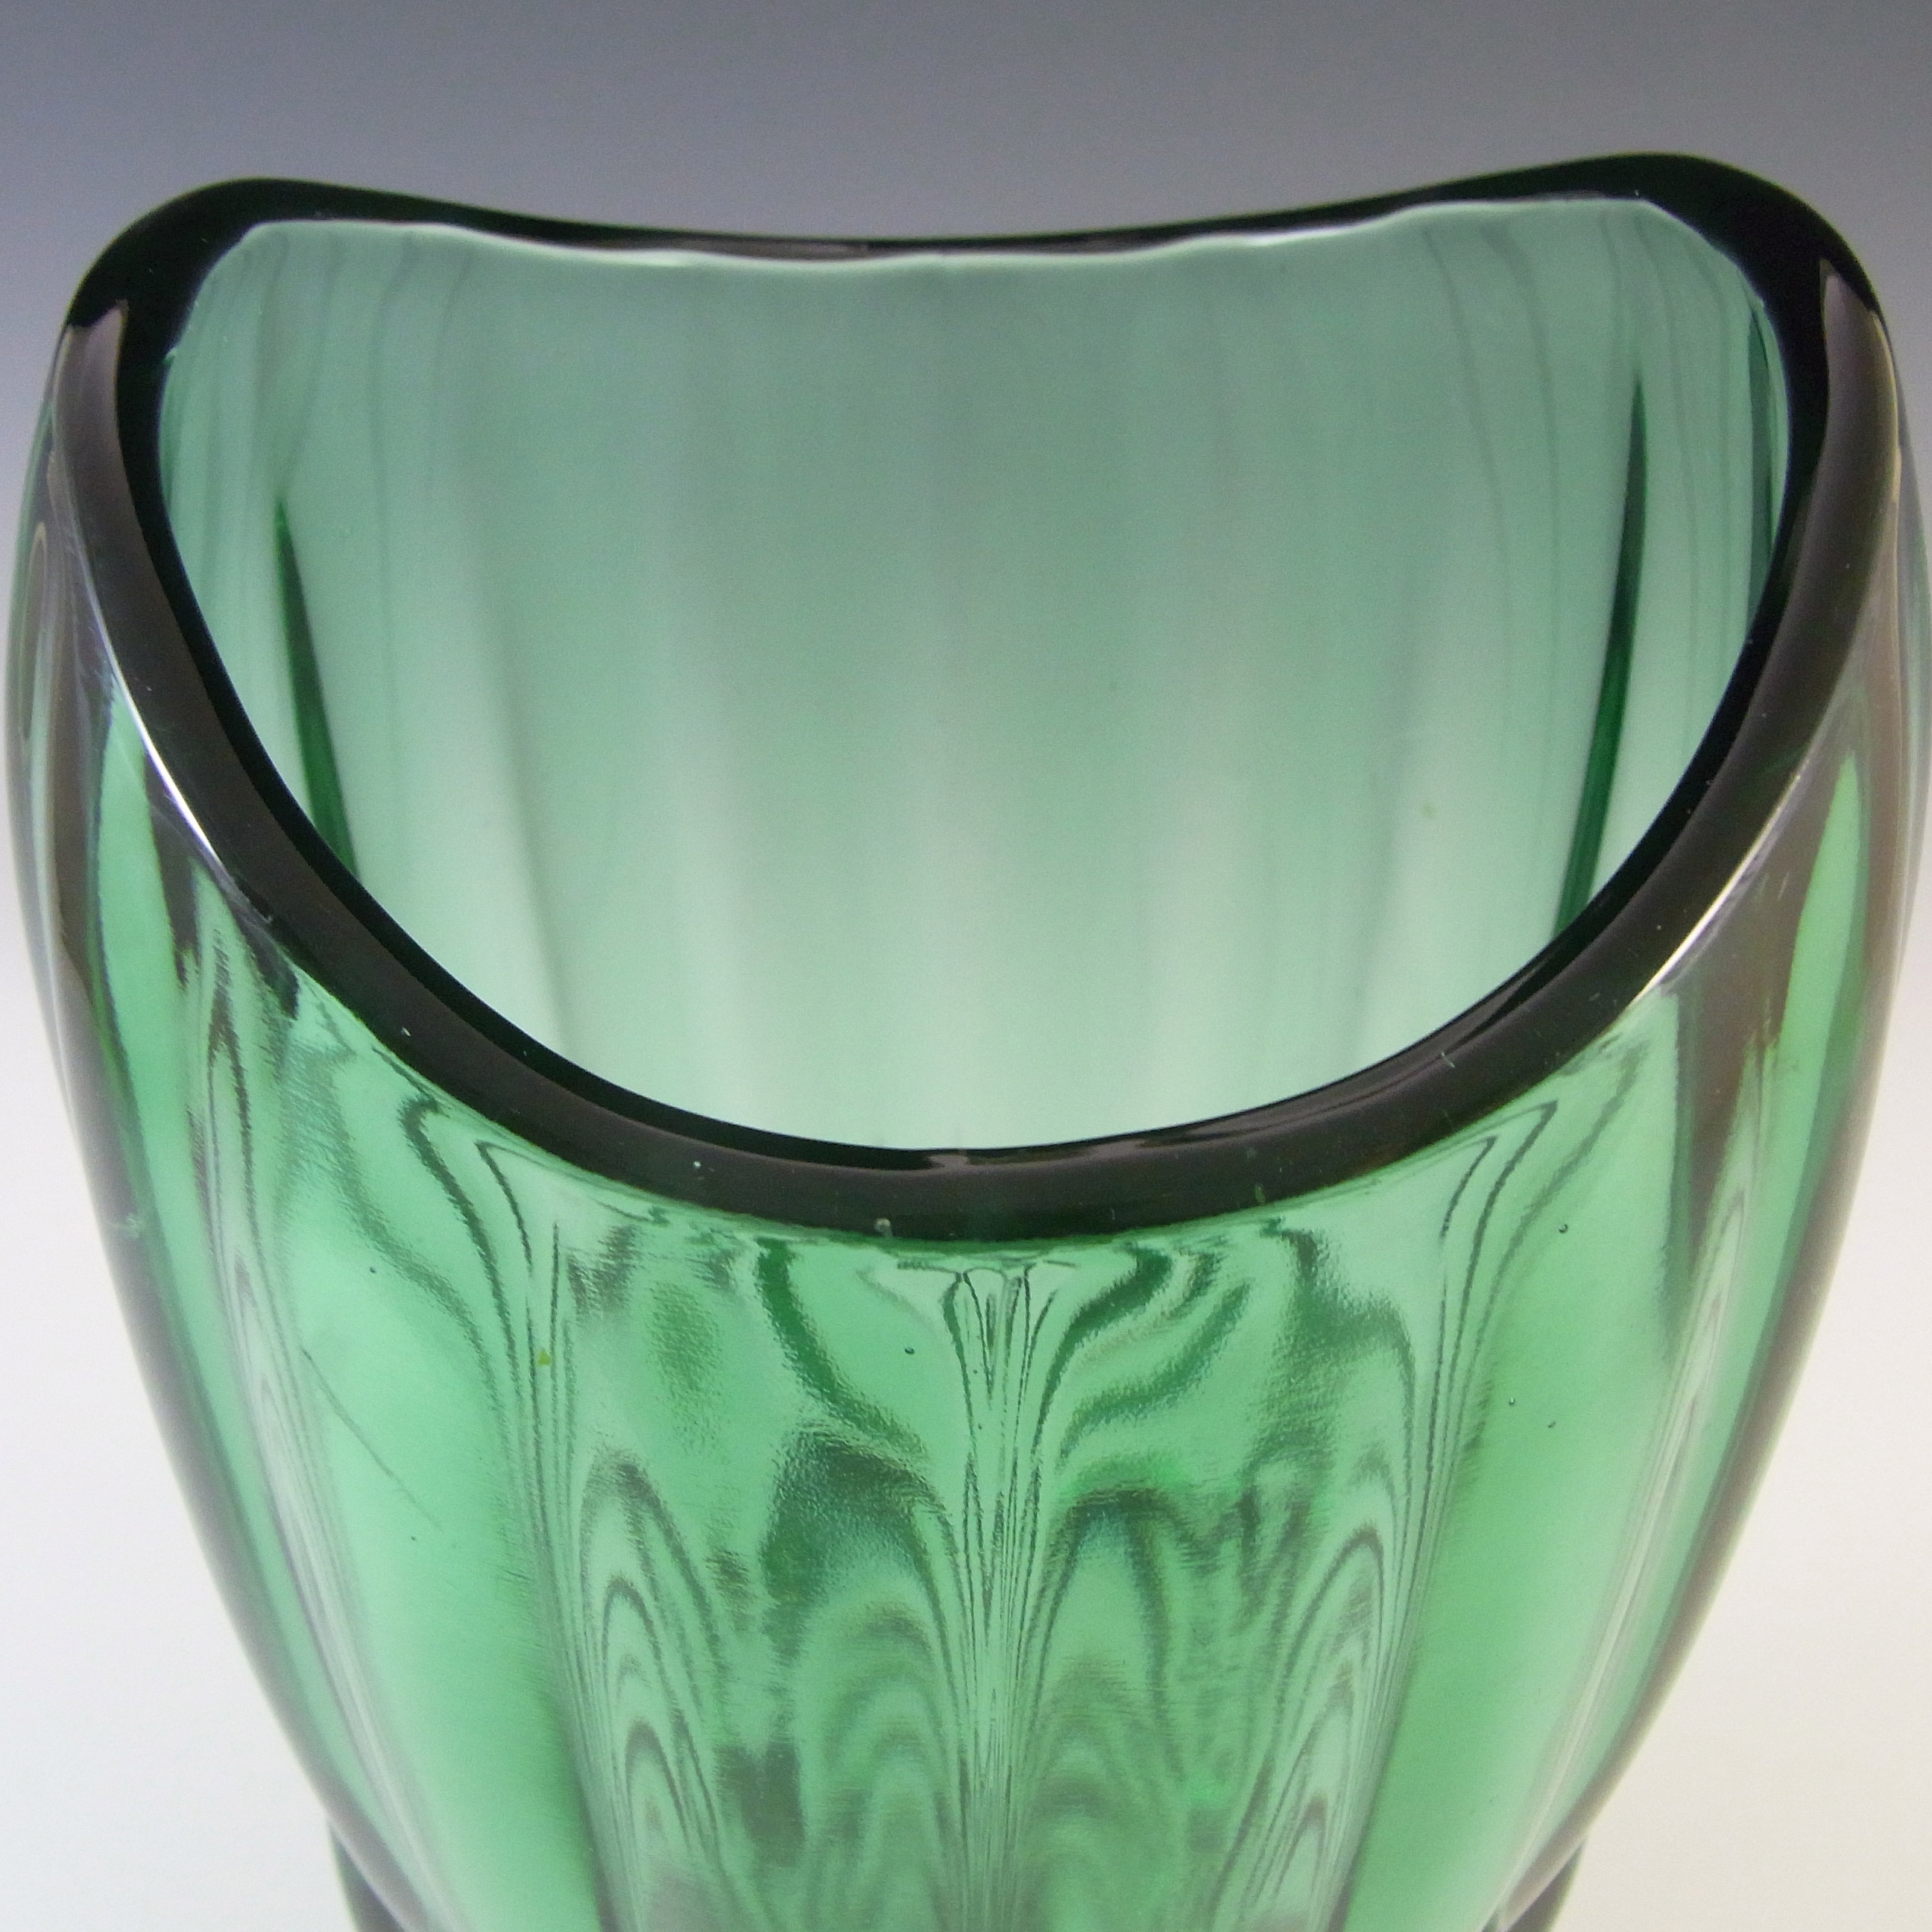 Sklo Union Rudolfova Green Glass Vase by Václav Hanuš #12992 - Click Image to Close